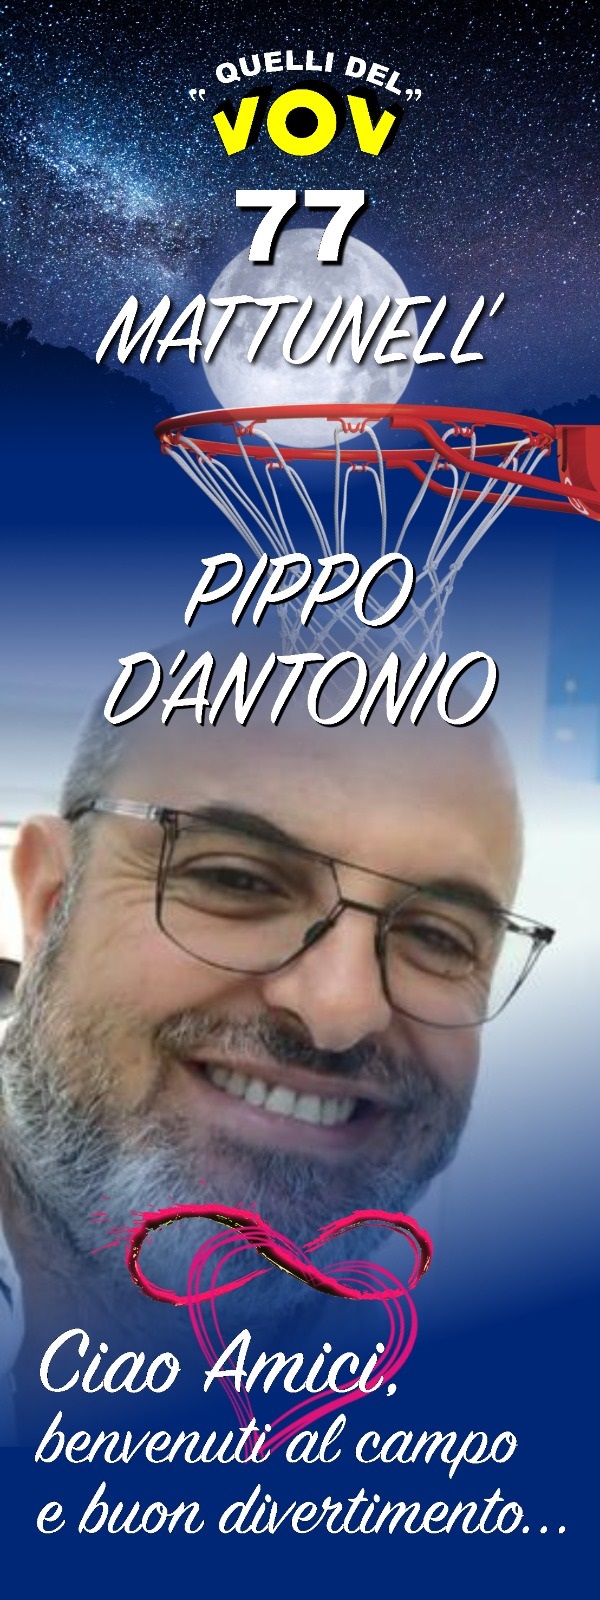 pippo BASKET OVER 50, UN WEEK END IN RICORDO DI PIPPO DANTONIO